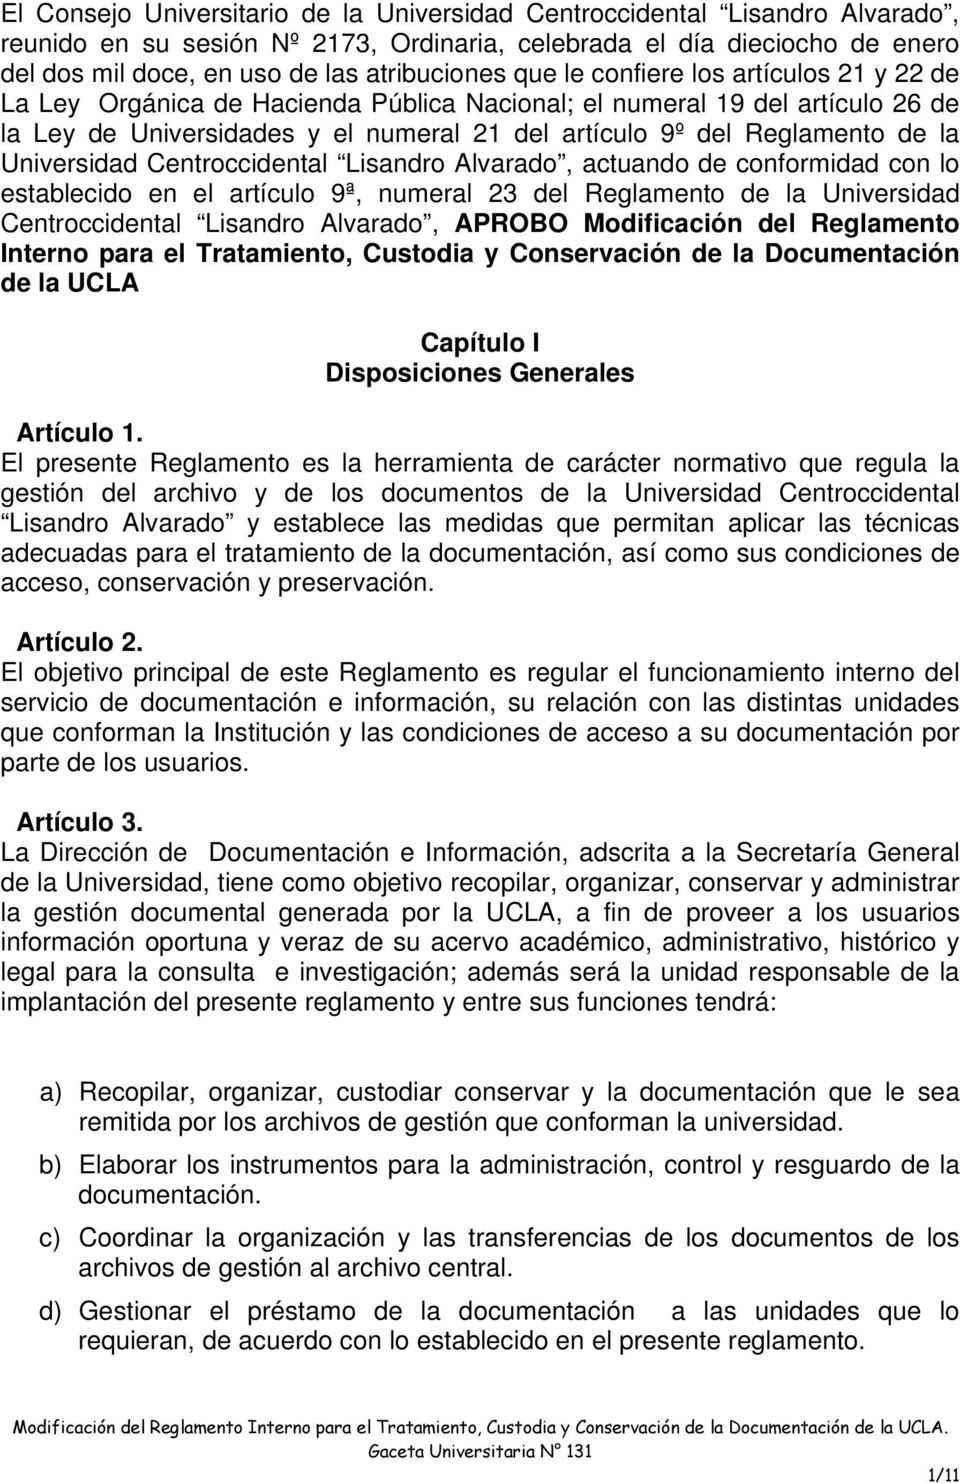 Universidad Centroccidental Lisandro Alvarado, actuando de conformidad con lo establecido en el artículo 9ª, numeral 23 del Reglamento de la Universidad Centroccidental Lisandro Alvarado, APROBO